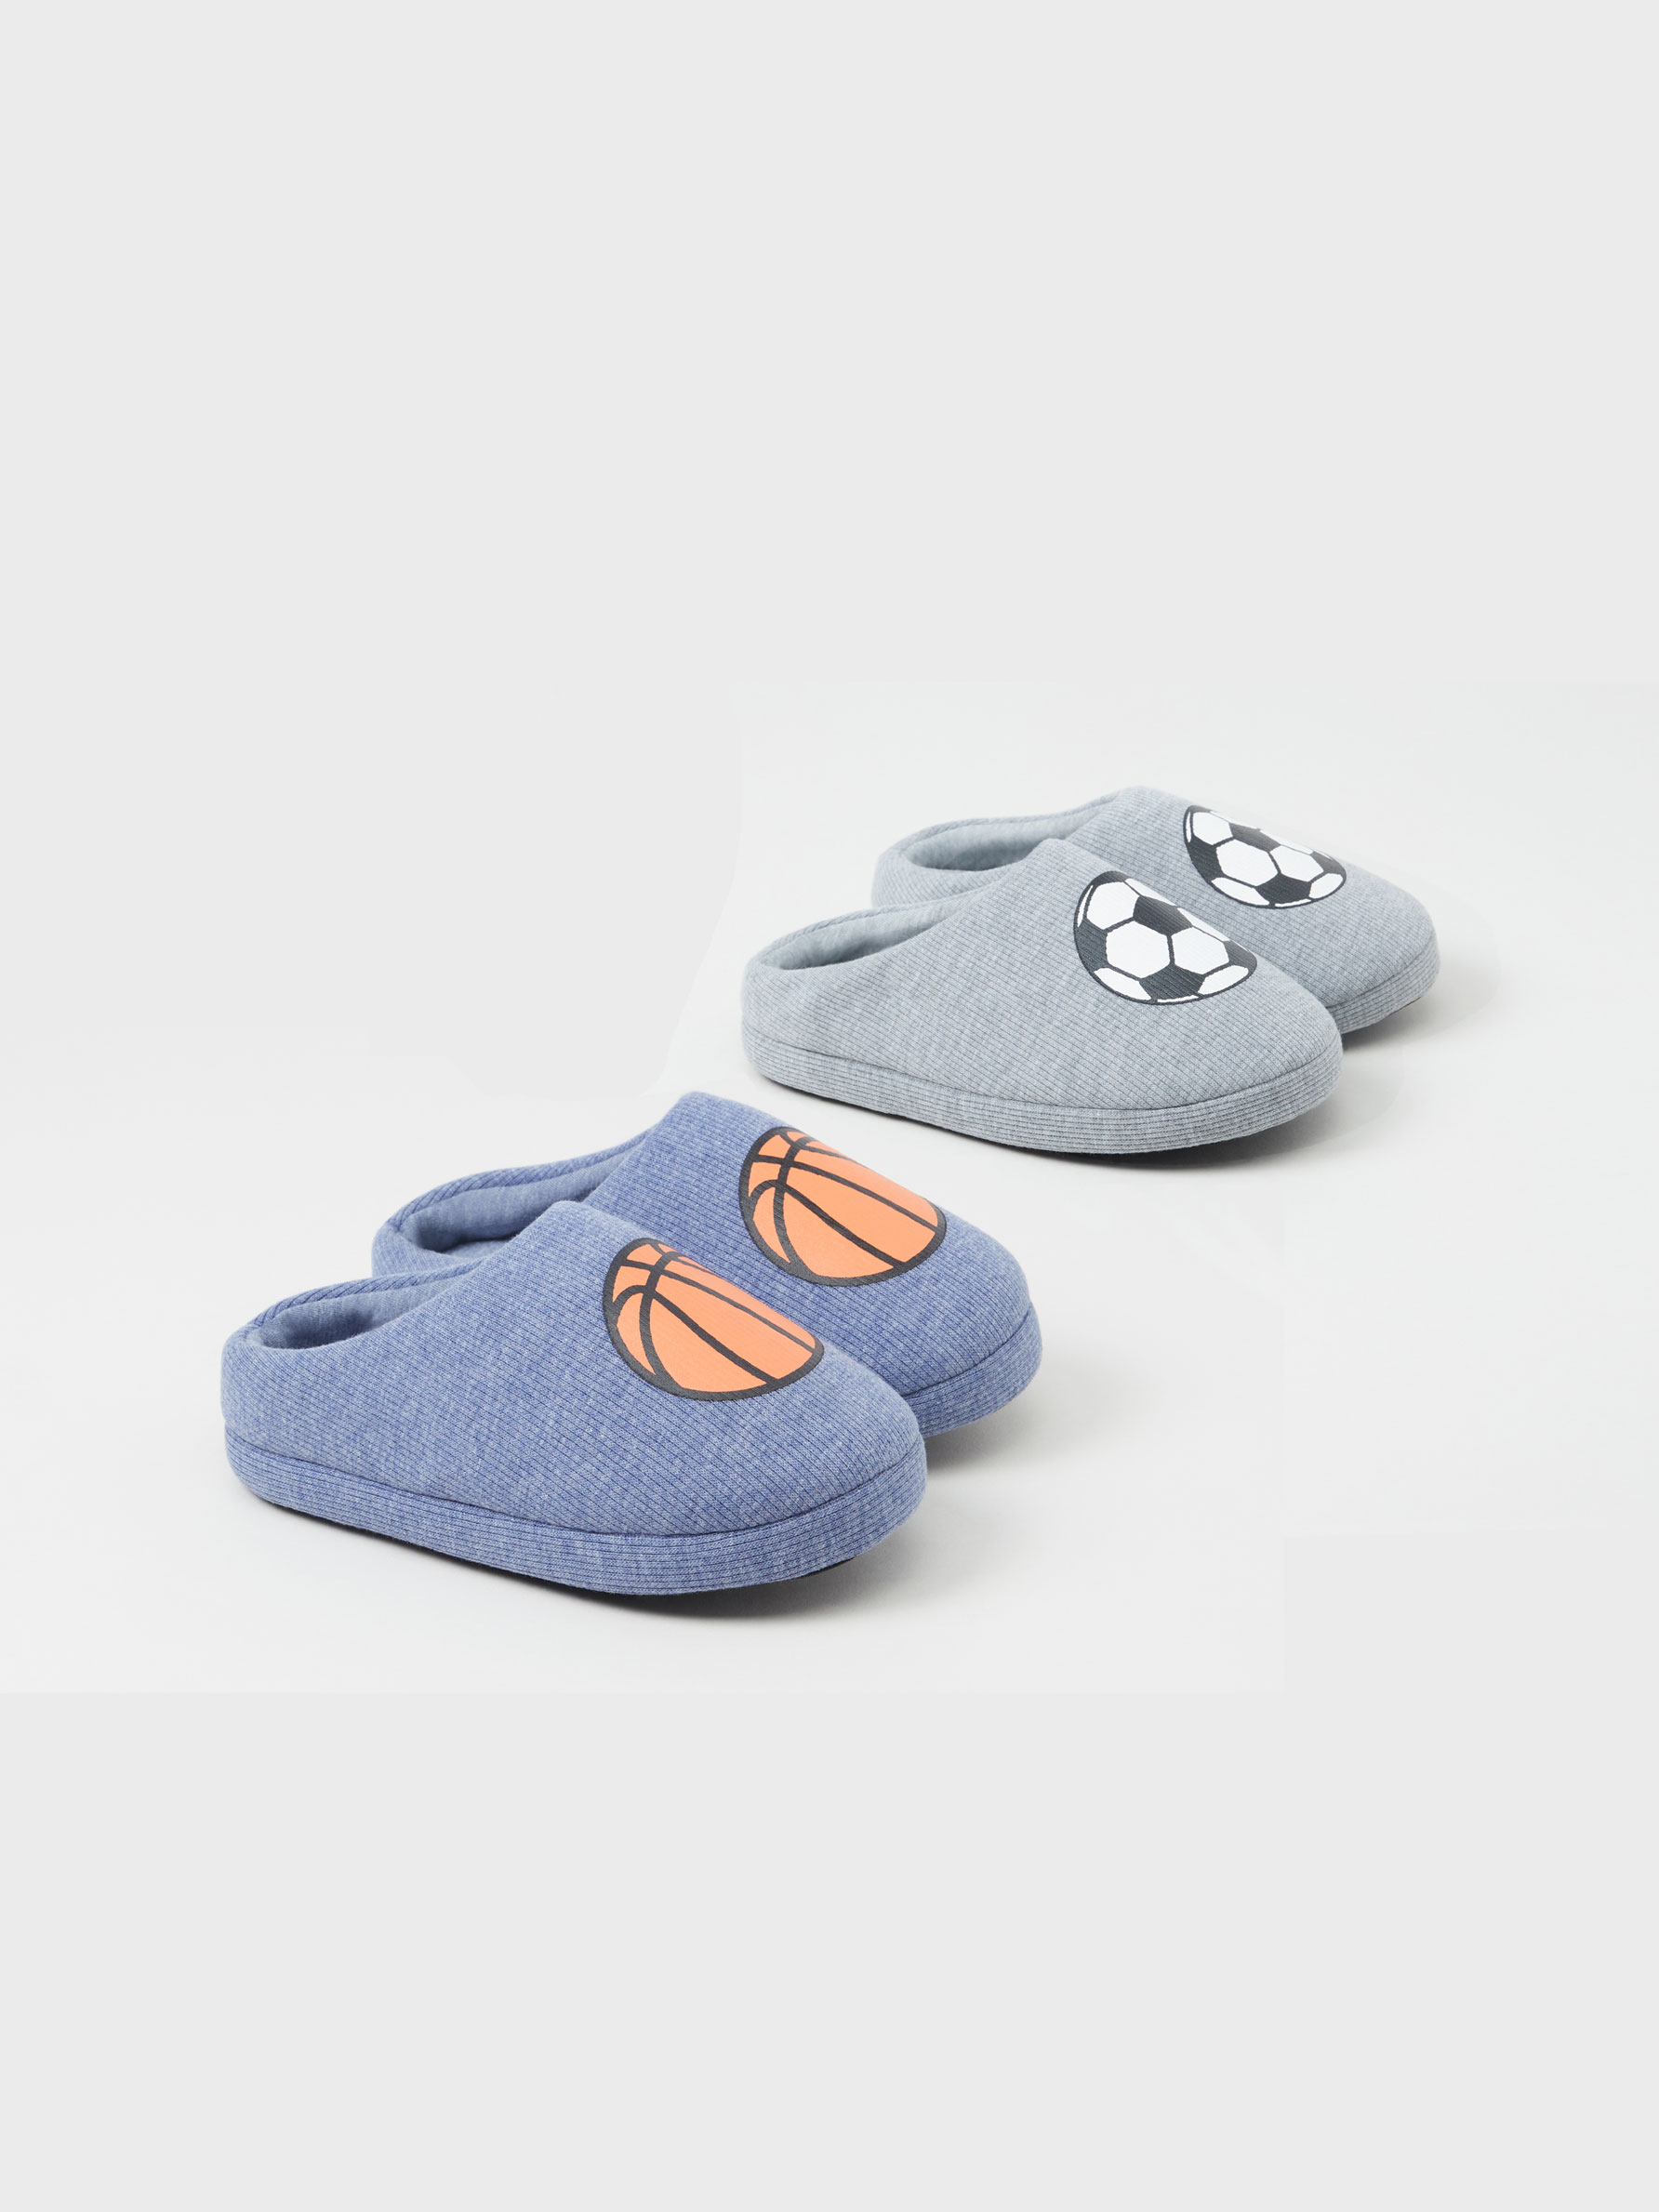 zapatilla de bebé elefante zapatilla personalizada Zapatillas de cuero suave zapatilla de niña cuero falso zapatilla de niño zapatilla de niño Zapatos Zapatos para niño Pantuflas 